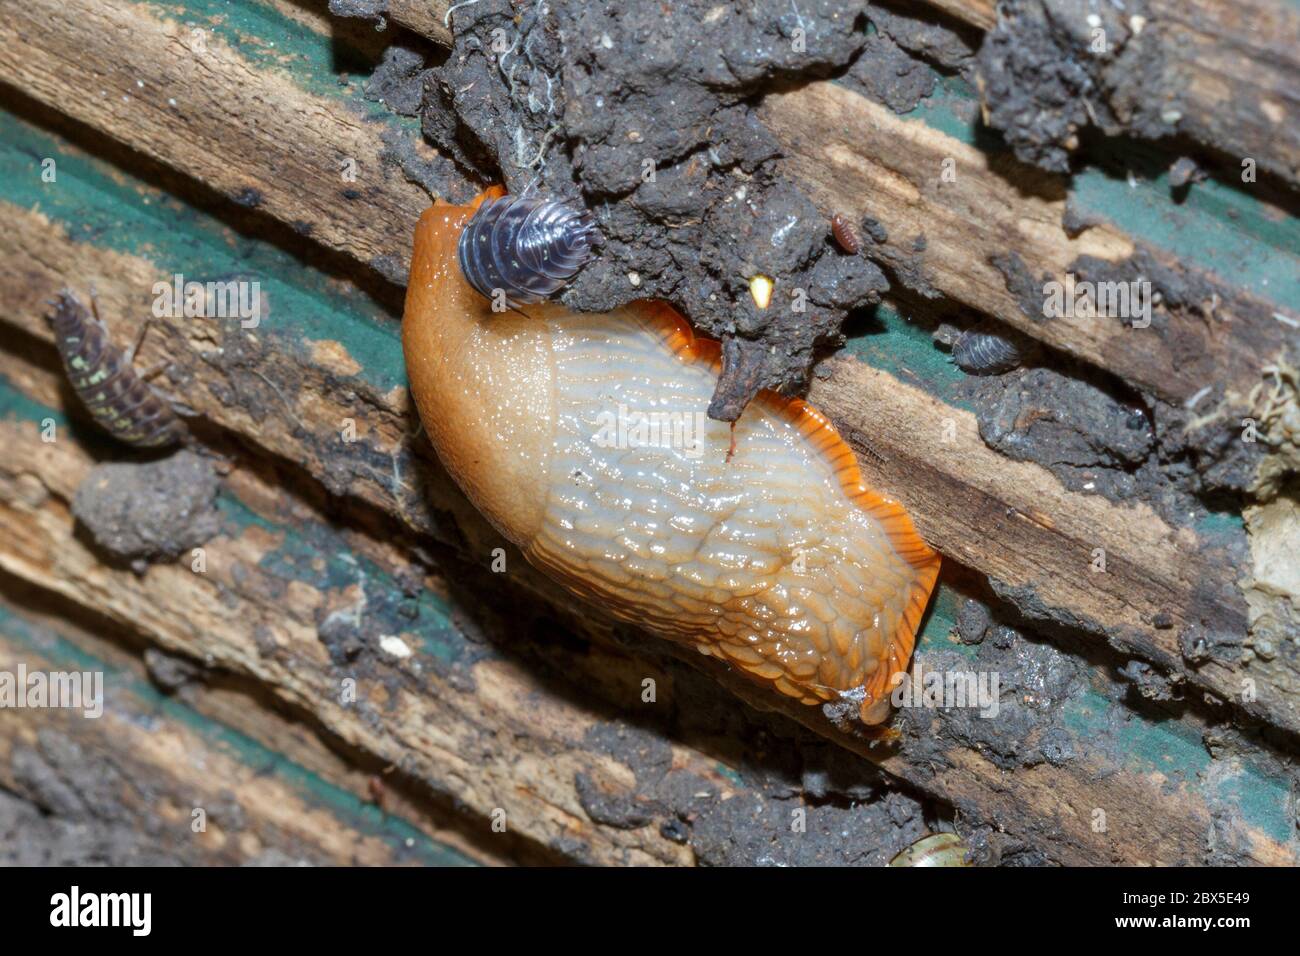 Arion ater slug, Sussex Garden, Großbritannien Stockfoto